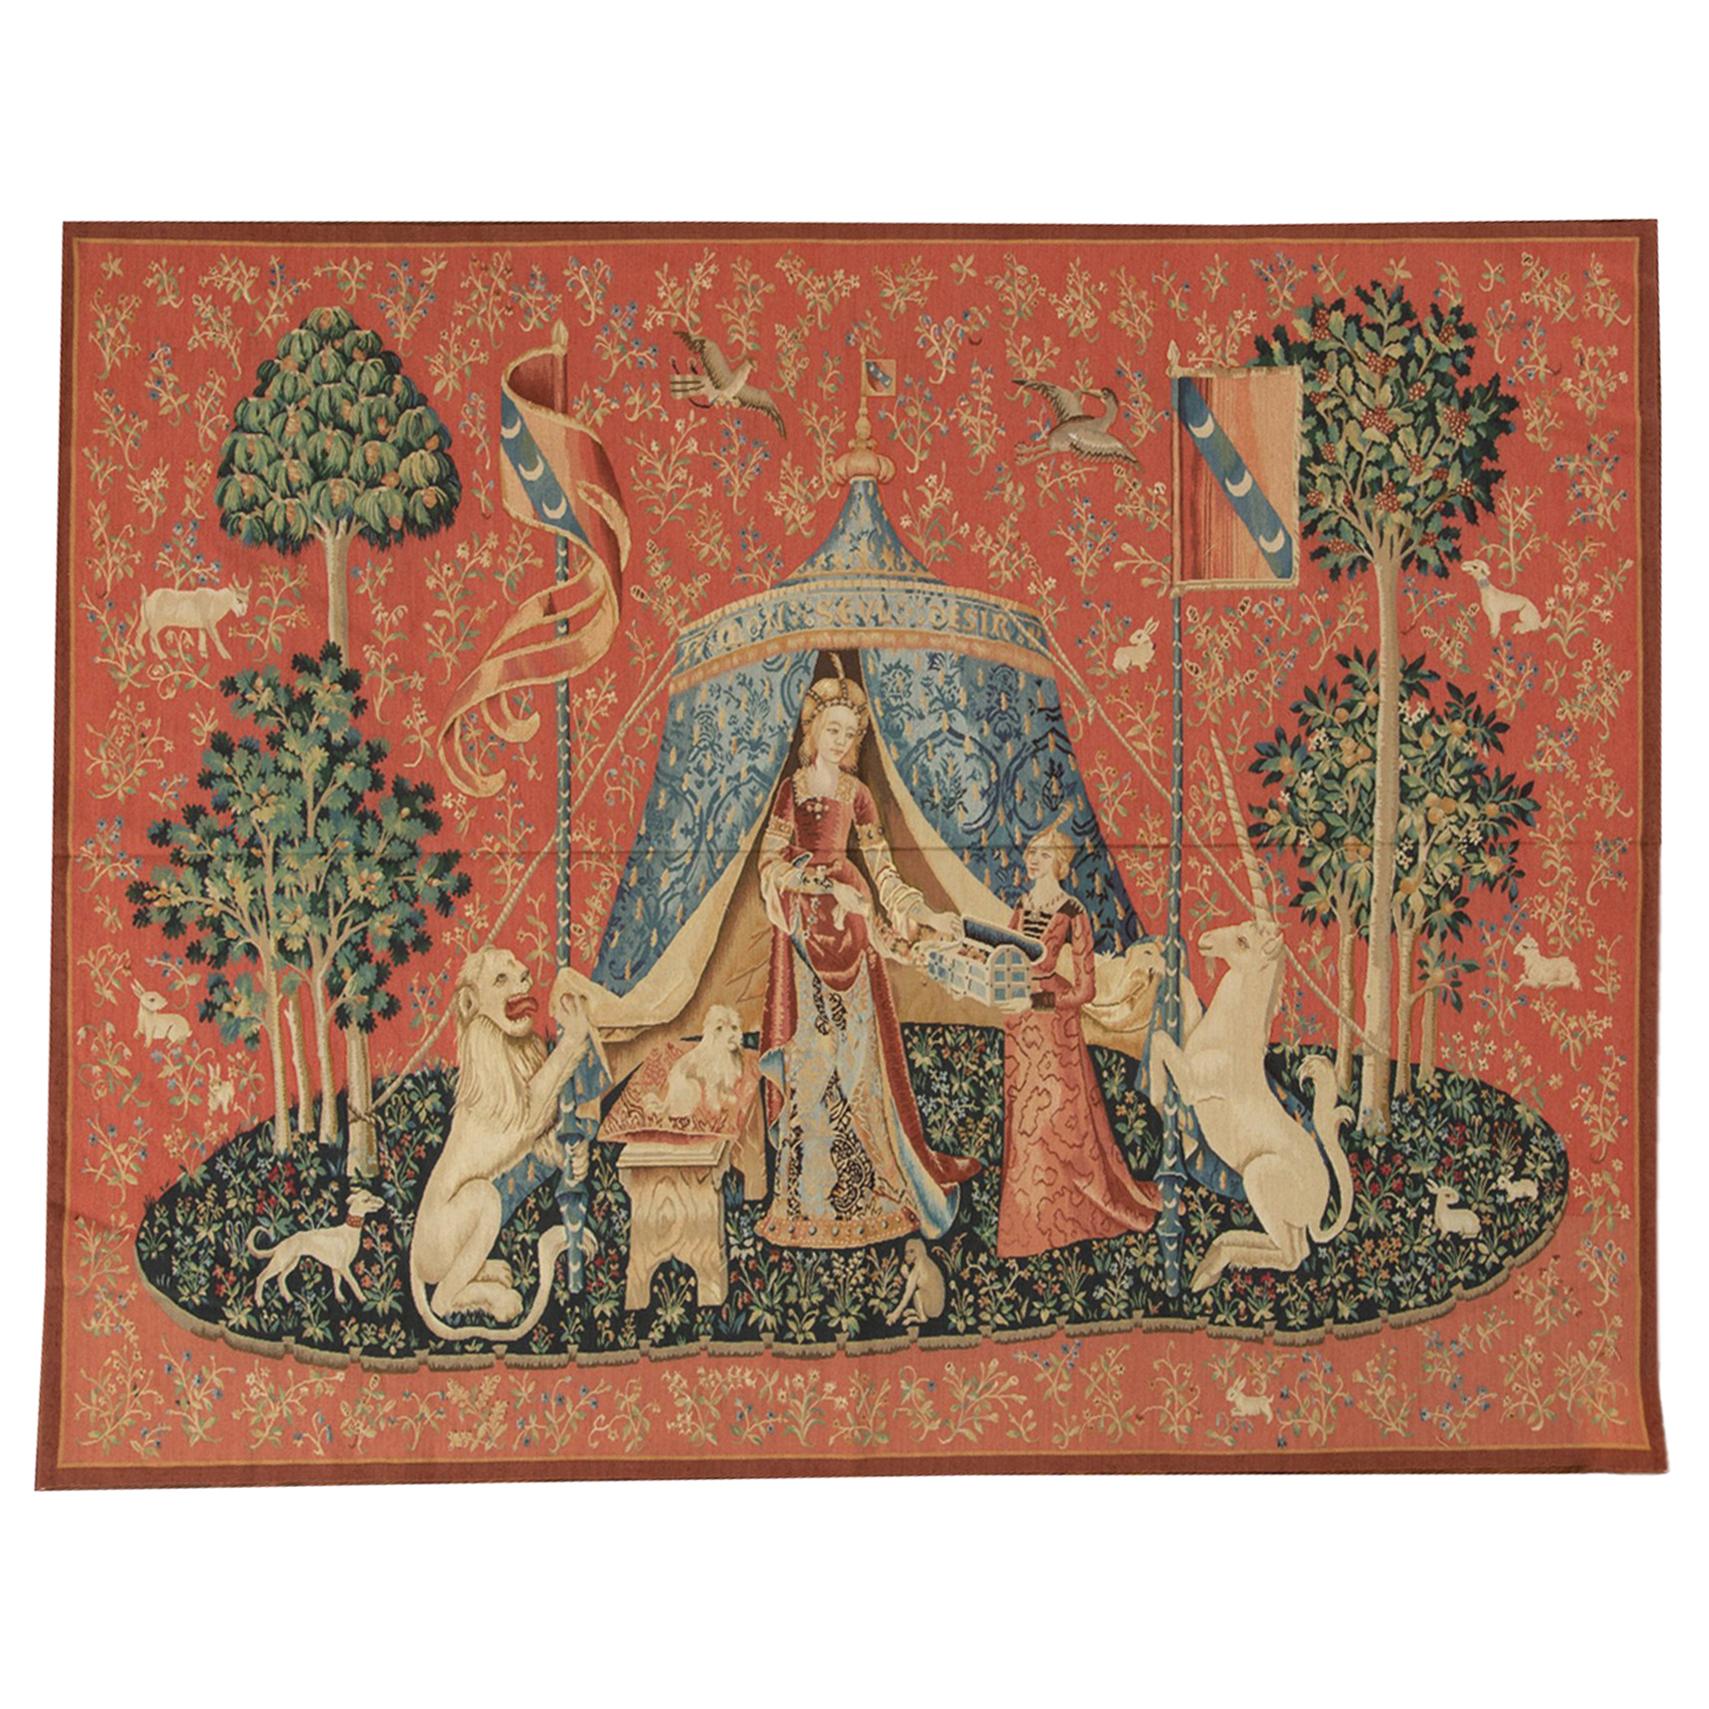 Wandteppich aus dem 15. Jahrhundert, Recreation der Dame mit dem Einhorn, „Taste“ aus der Serie „Taste“